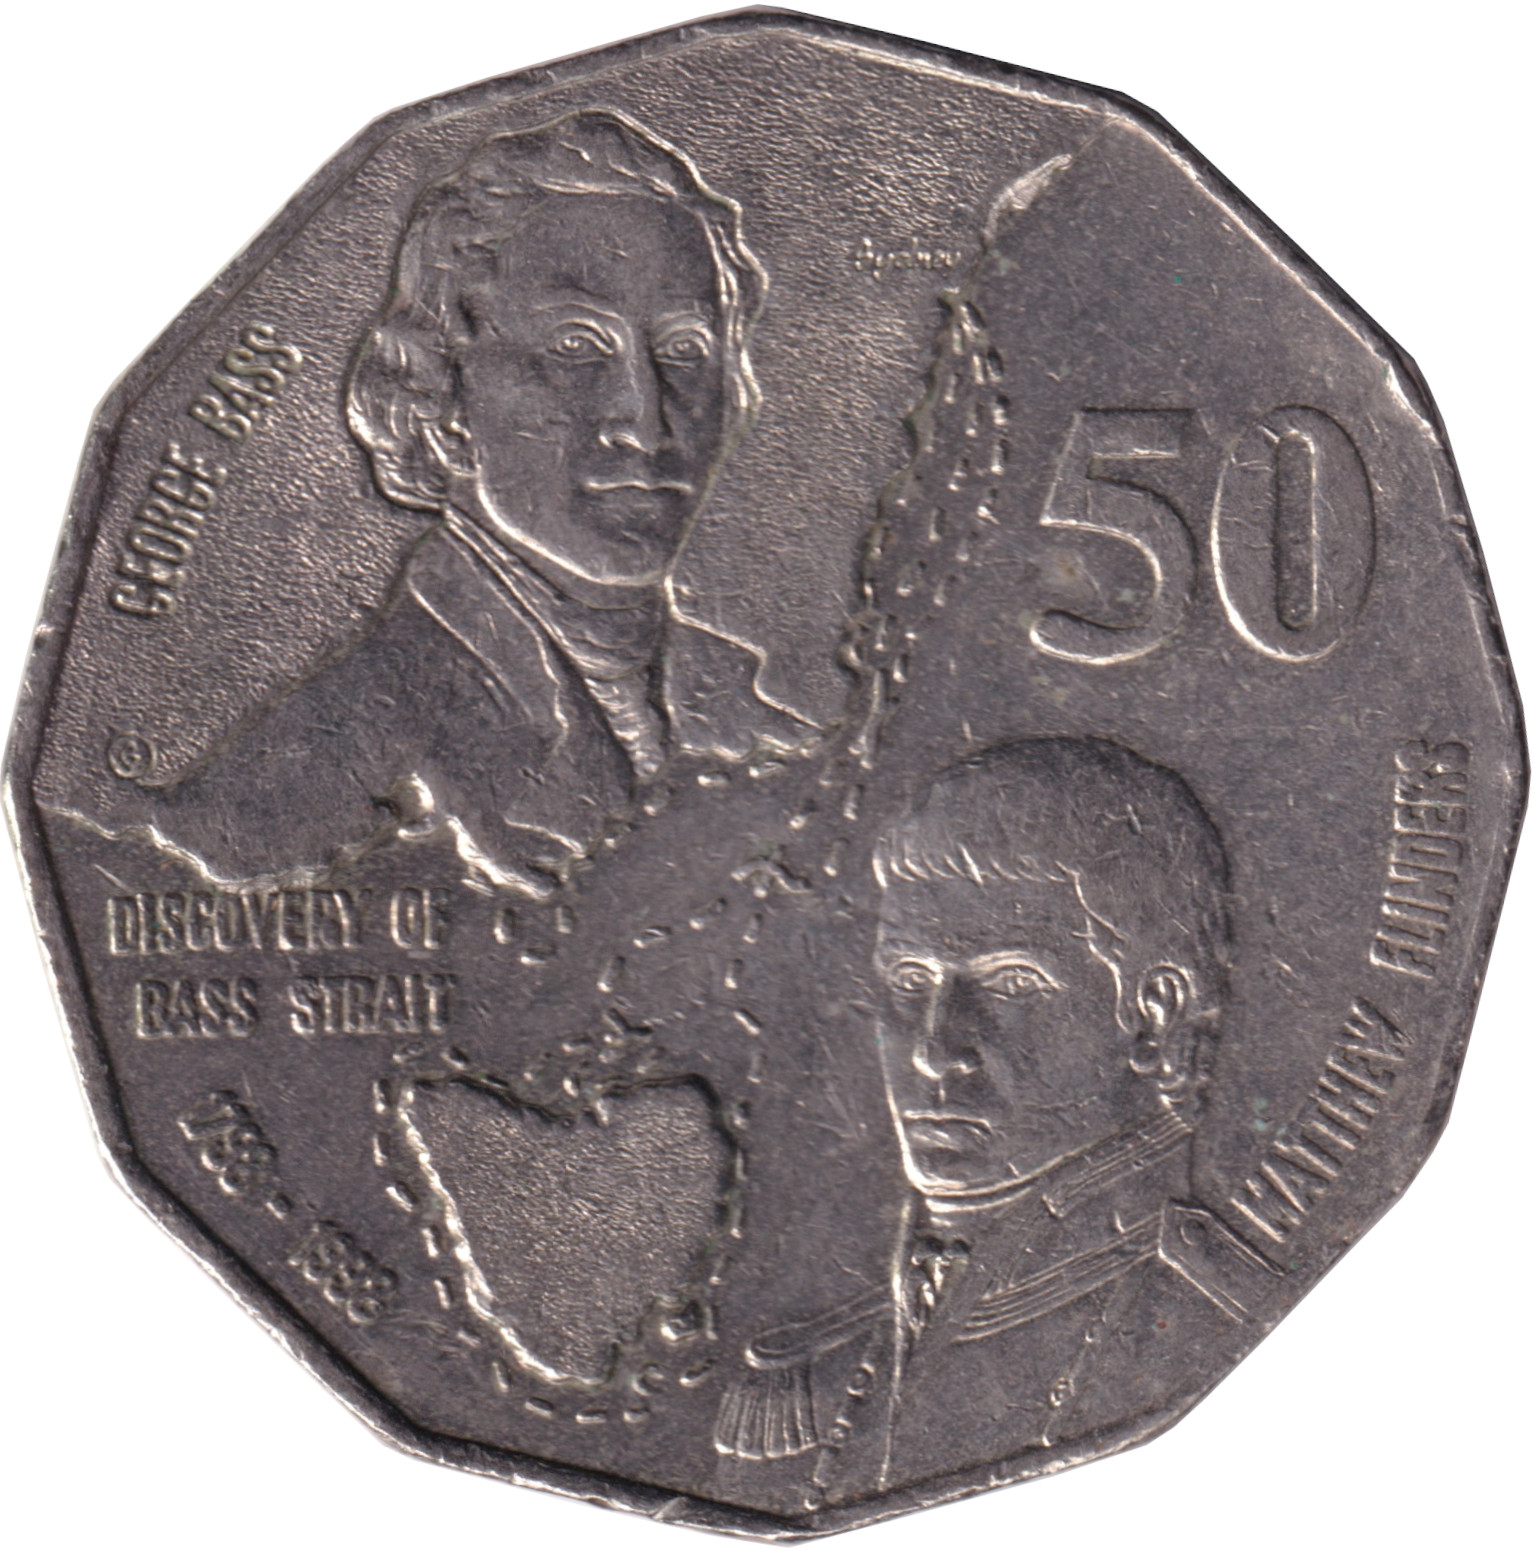 50 cents - Bass Stralt